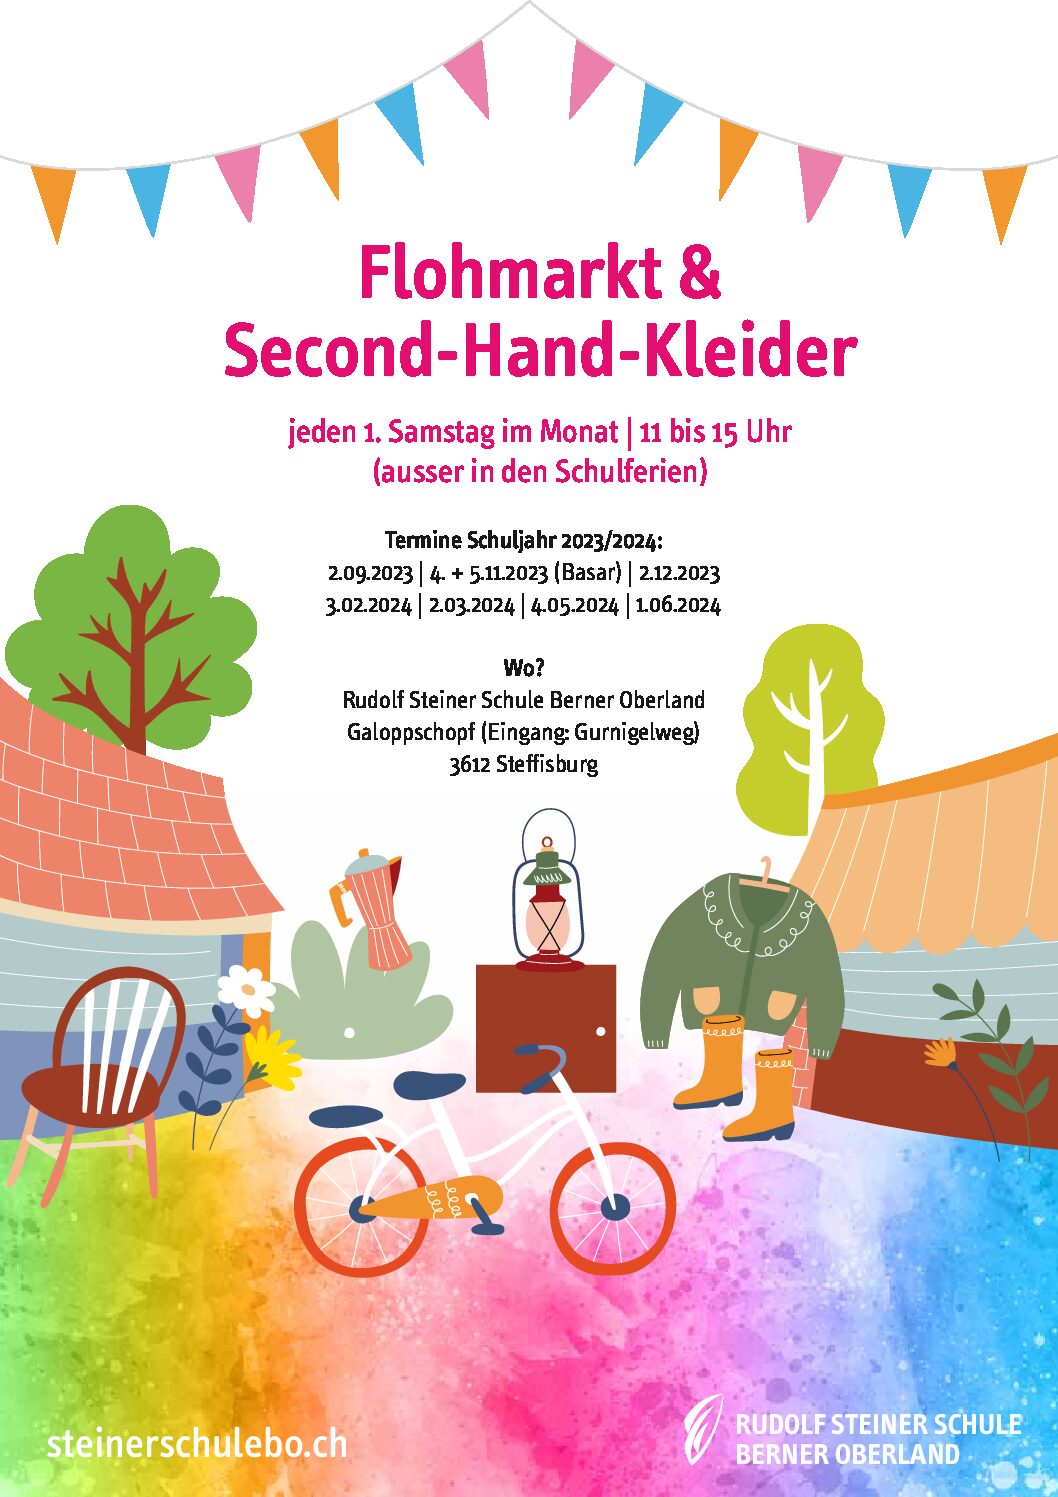 Flohmarkt & Second-Hand-Kleider